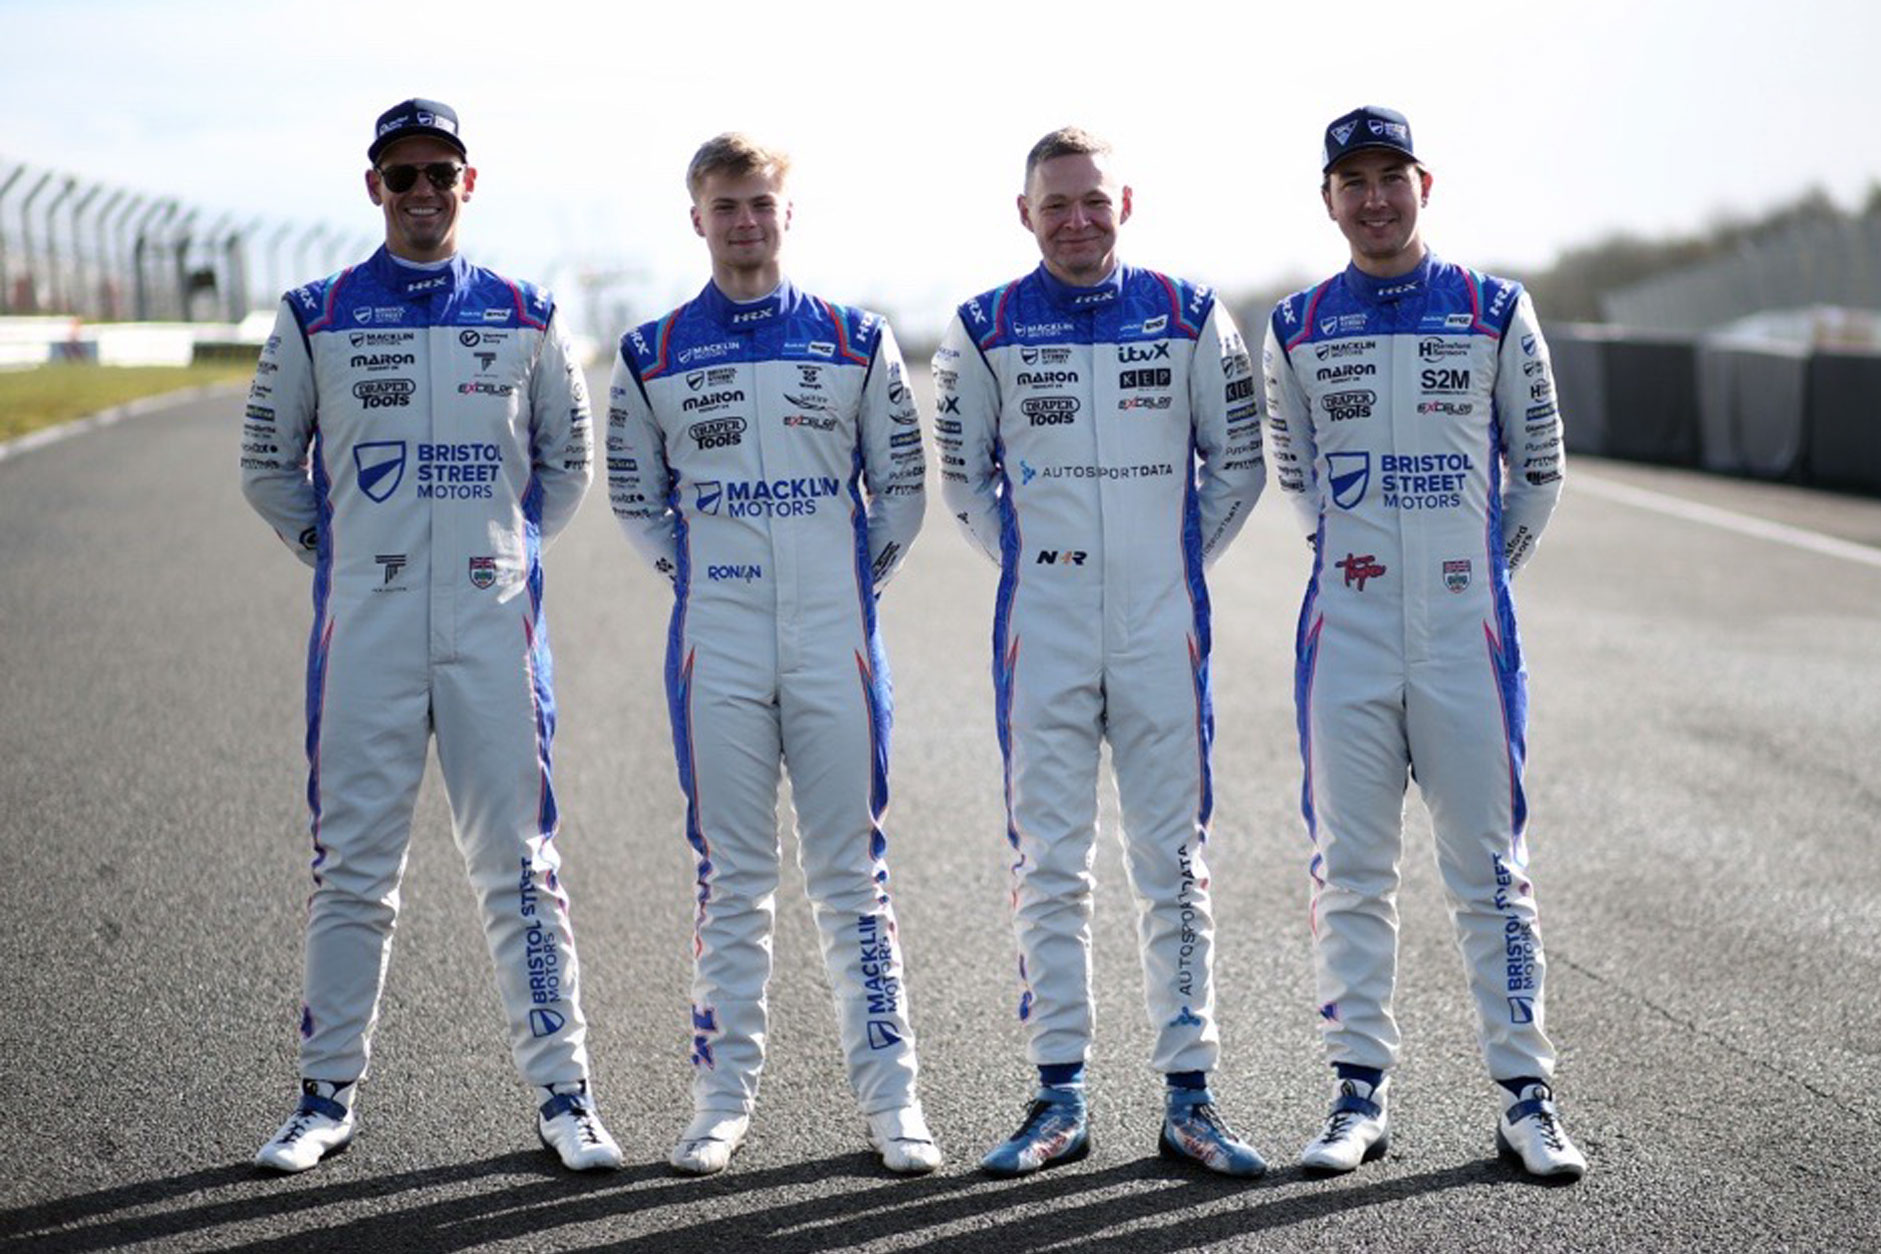 EXCELR8 Motorsport team